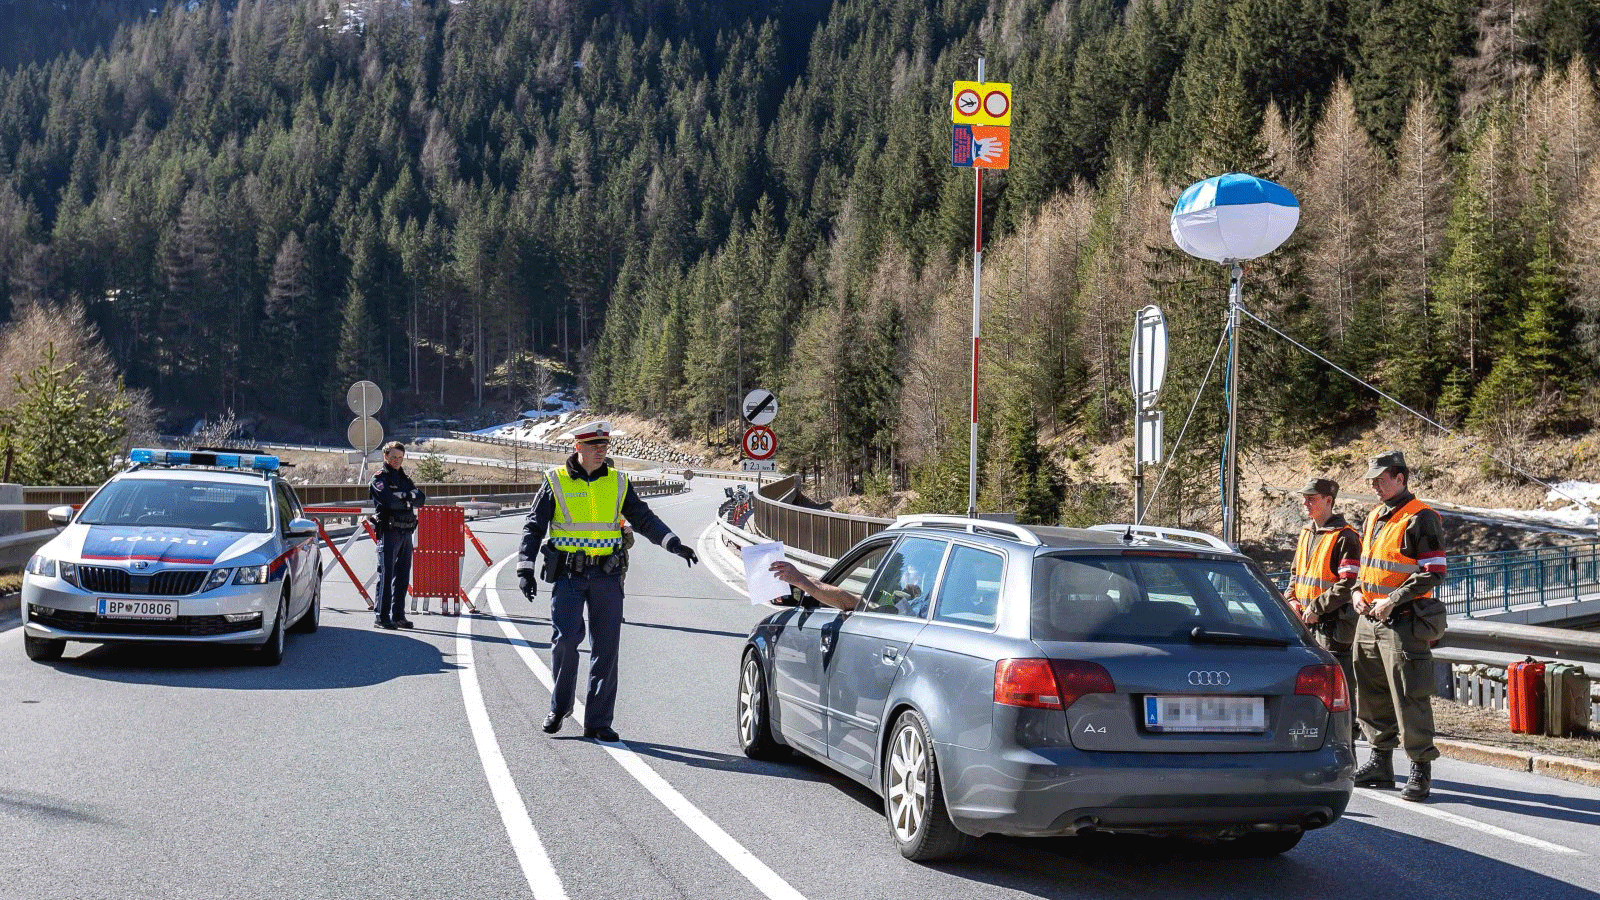 سائق يقدم وثائق لشرطي نمساوي على حاجز صحي في بلدة تيرول.في آذار/مارس 2020 في Soelden